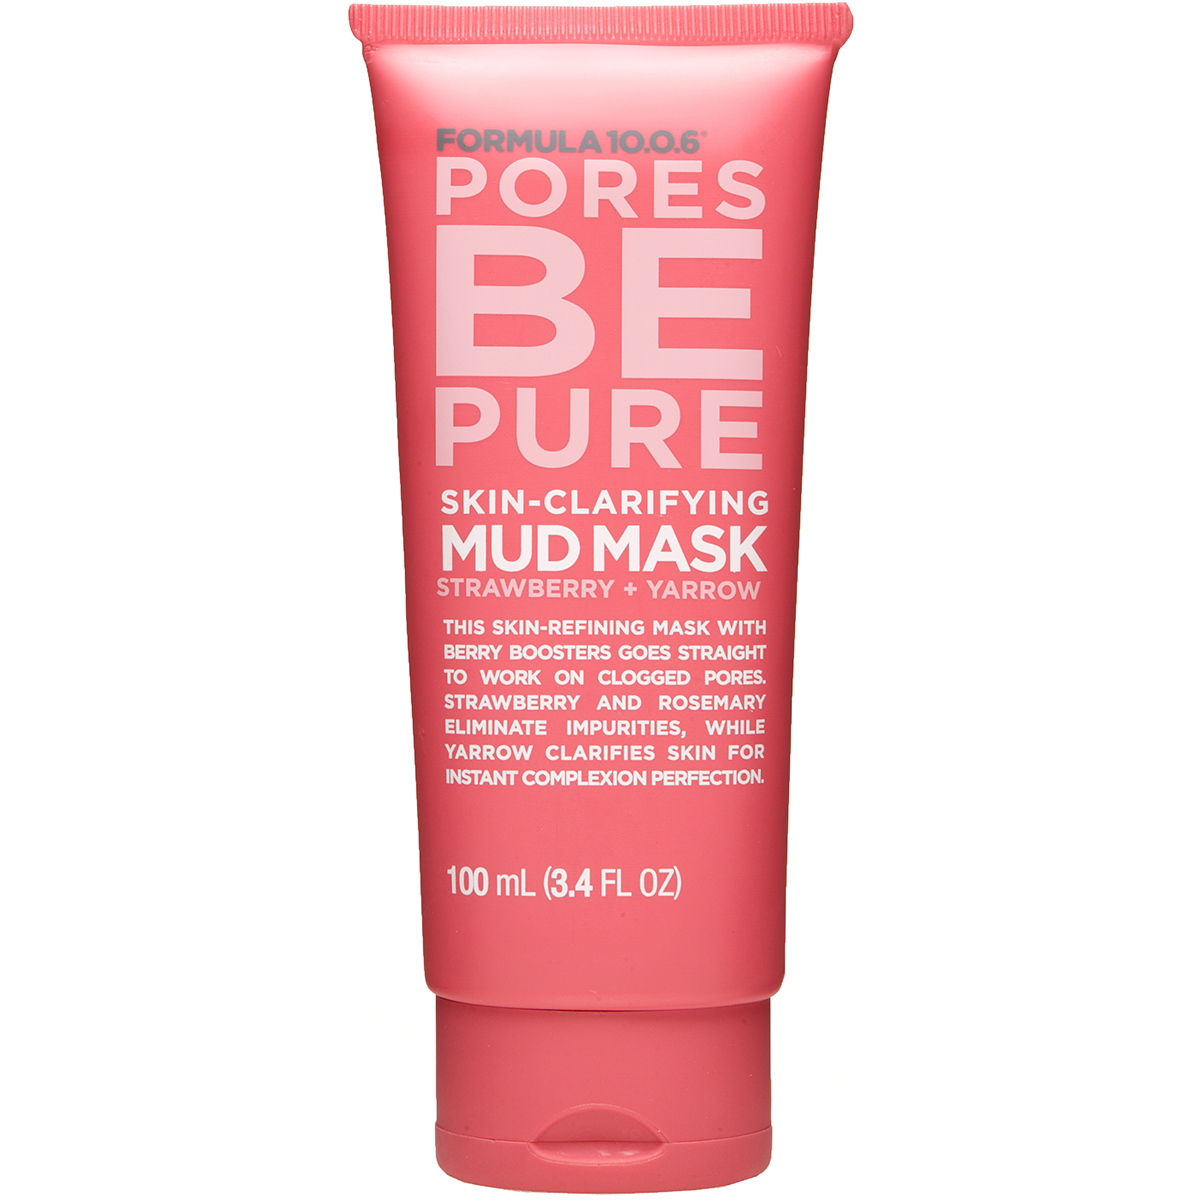 Formula 10.0.6 Pores Be Pure Skin-Clarifying Mud Mask, 100 ml Formula 10.0.6 Ansiktsmaske